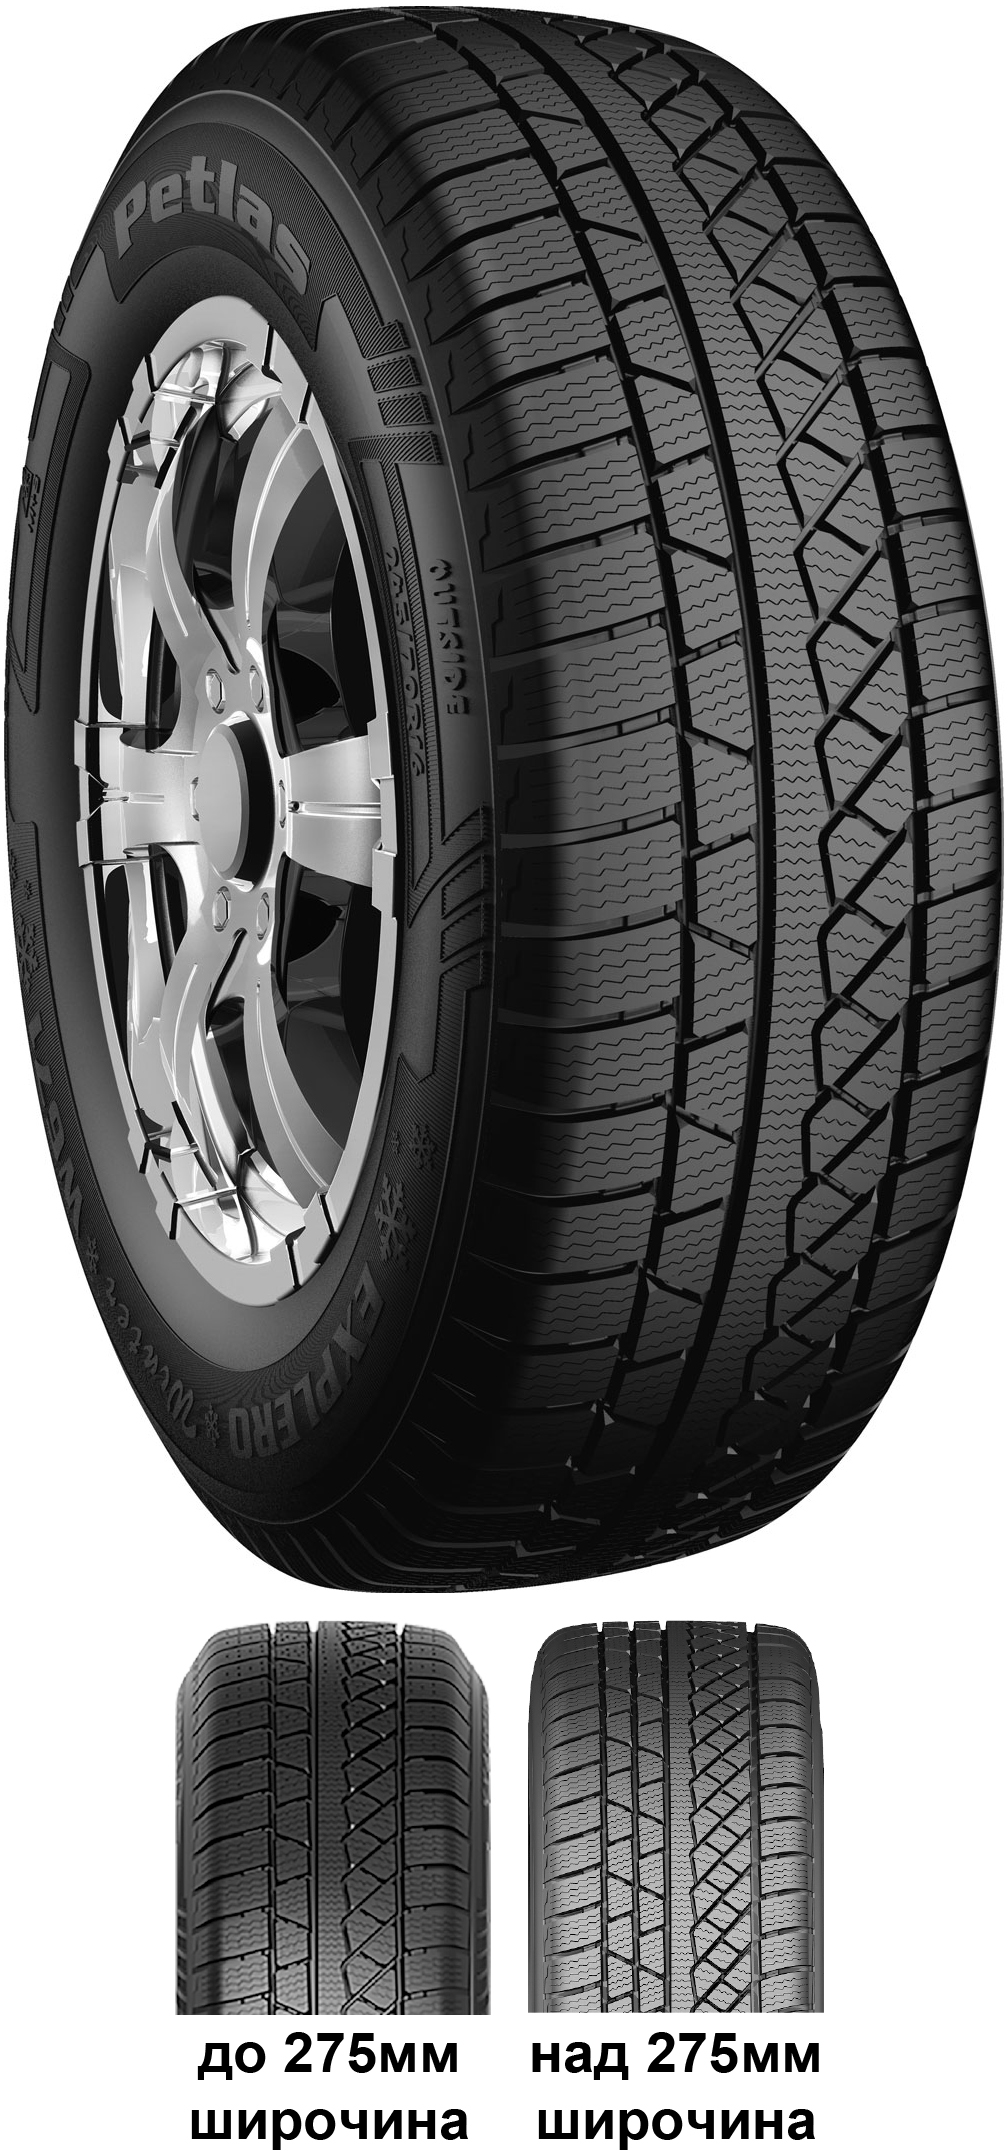 Джипови гуми PETLAS EXPLERO W671 215/60 R17 100H